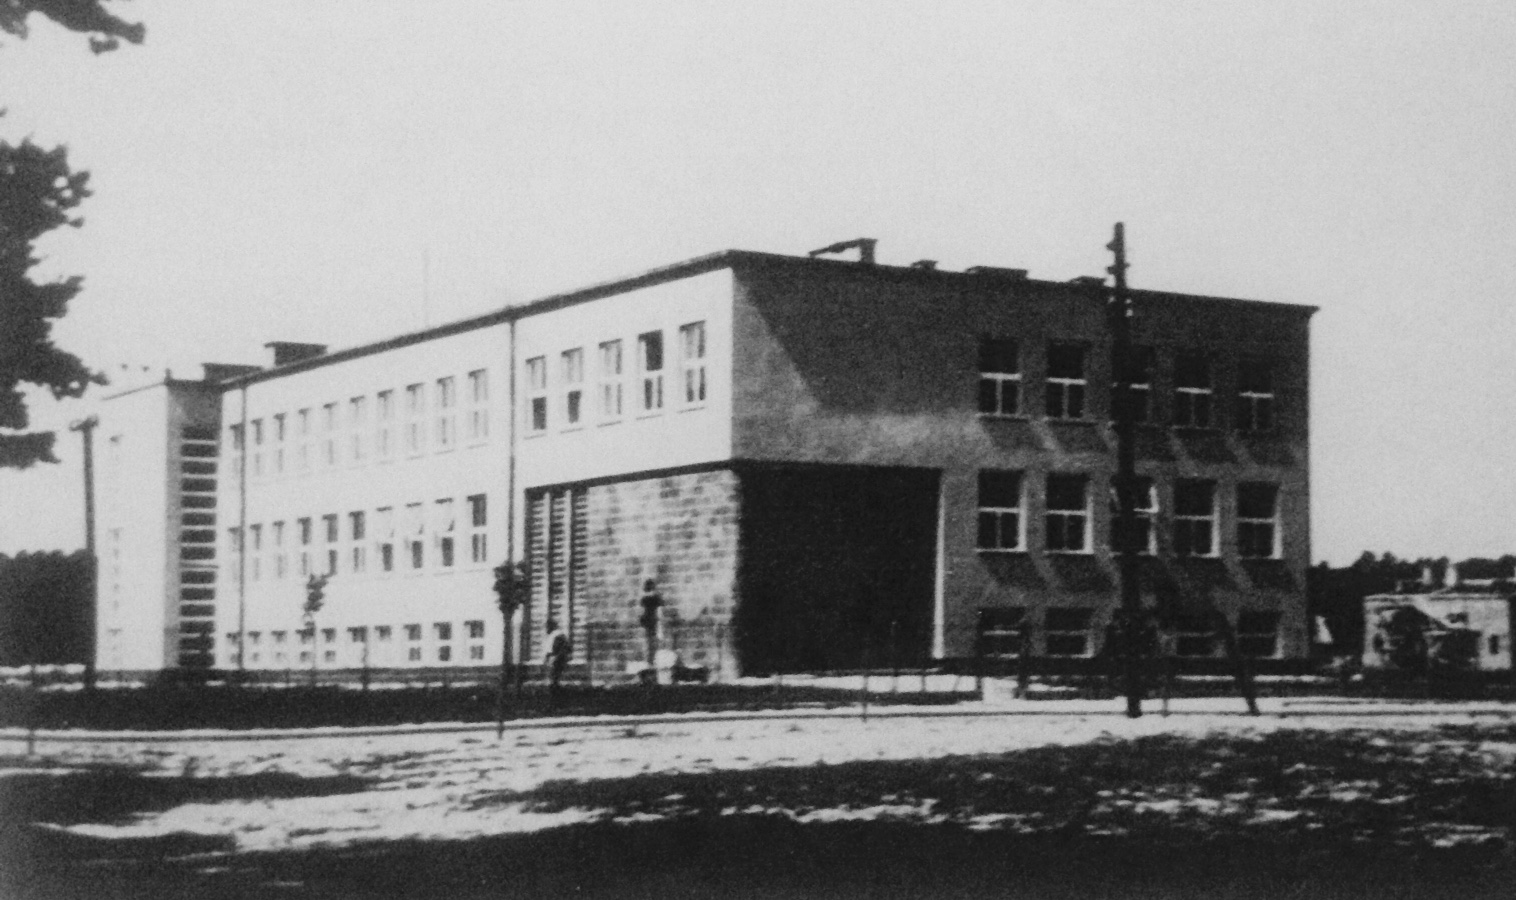 Przedwojenna szkoła powszechna, w ktorej Niemcy urządzili szpital podczas okupacji (fot: D. Garbacz)